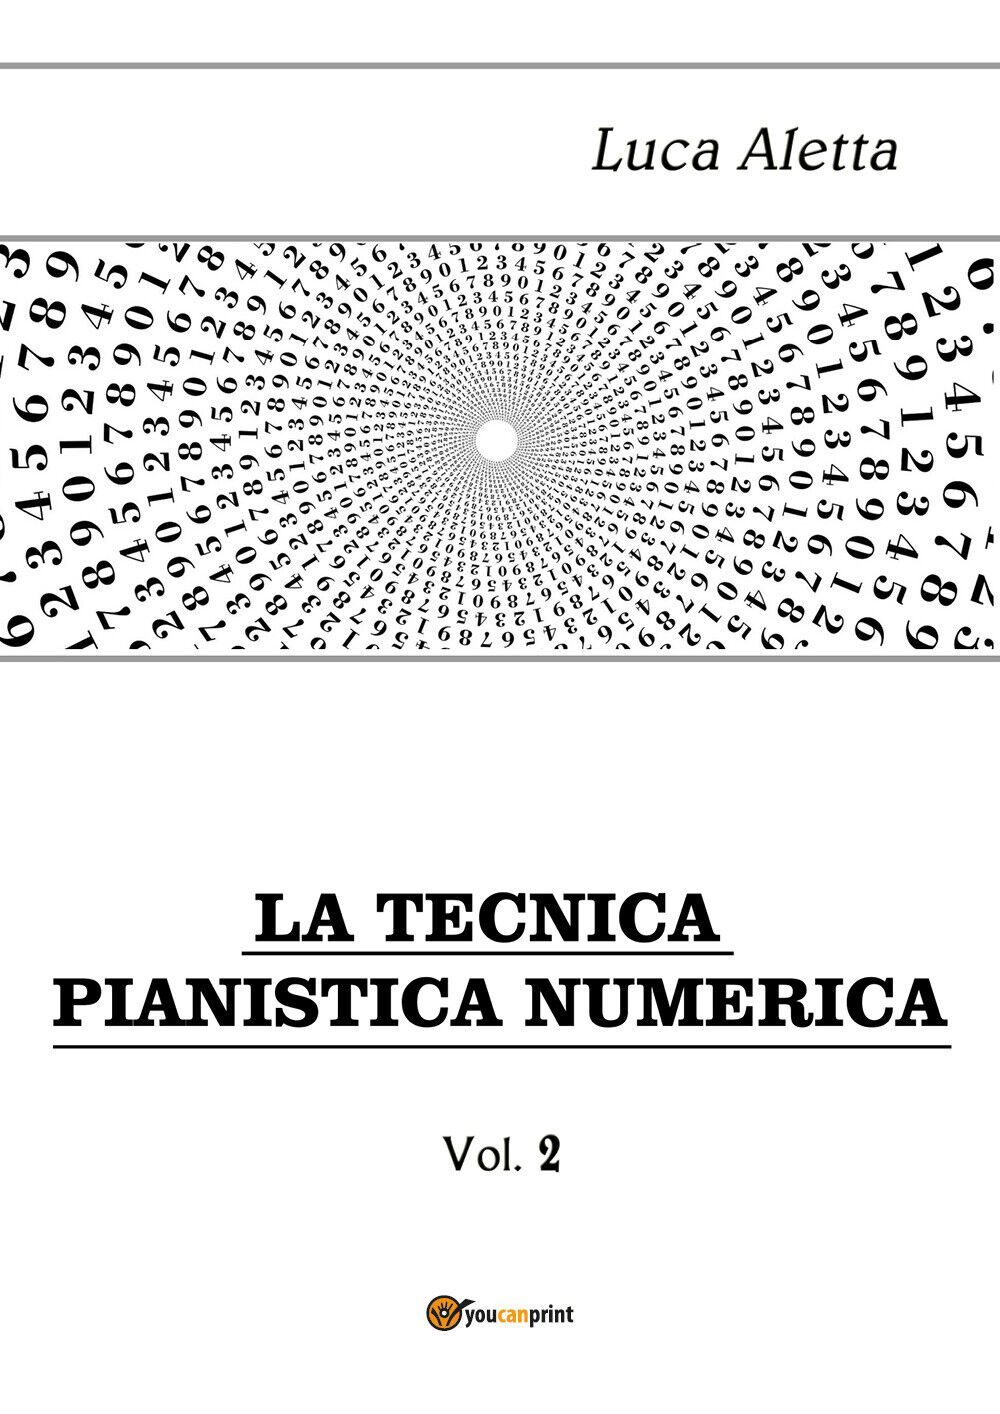 La Tecnica Pianistica Numerica vol. 2 di Luca Aletta,  2019,  Youcanprint